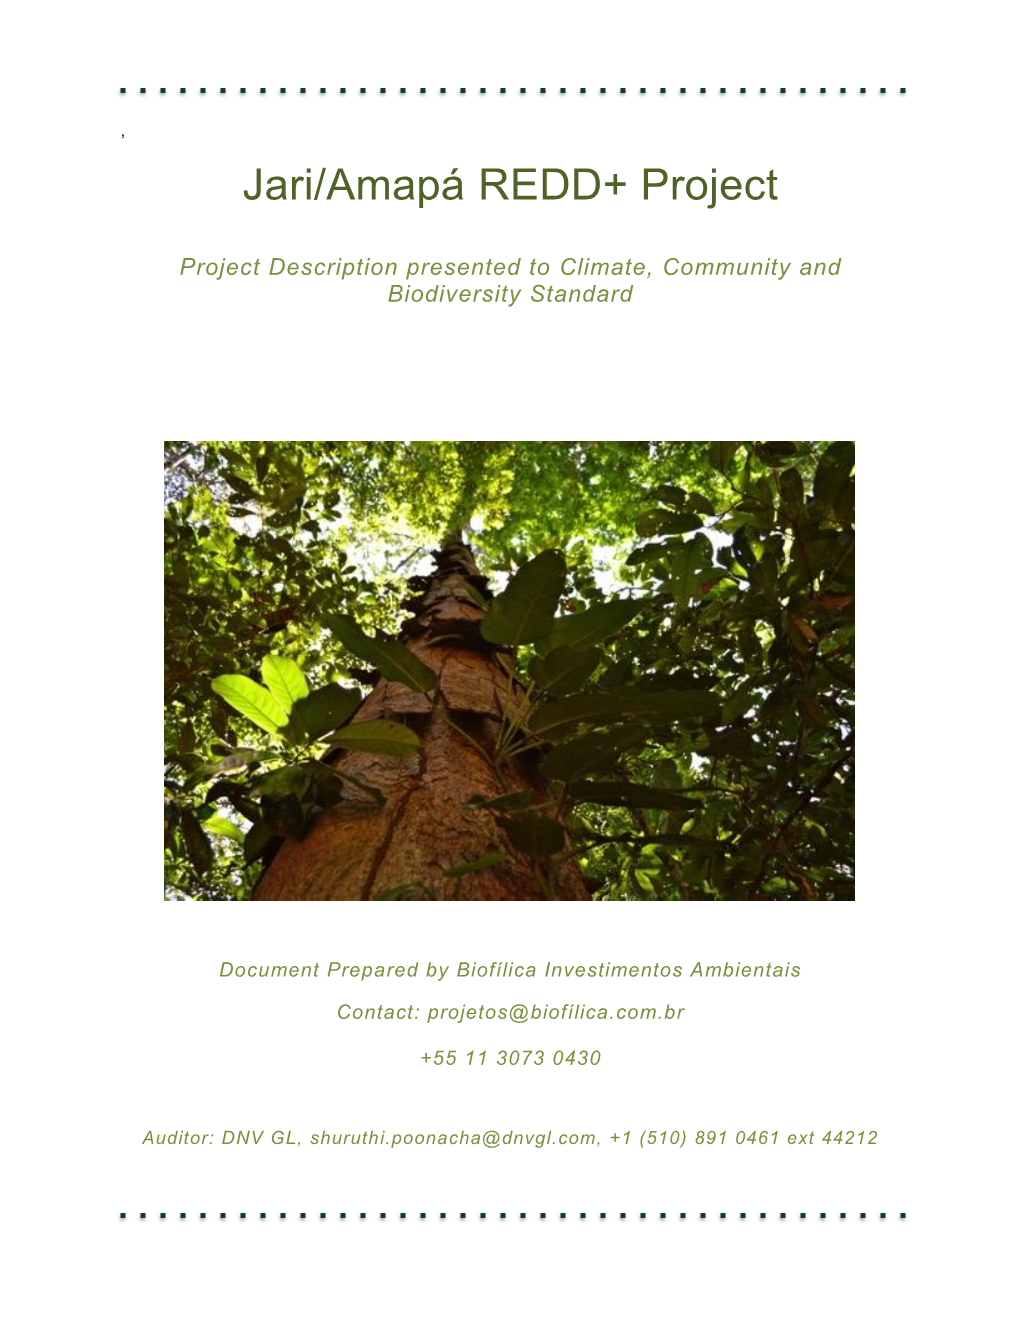 Jari/Amapá REDD+ Project